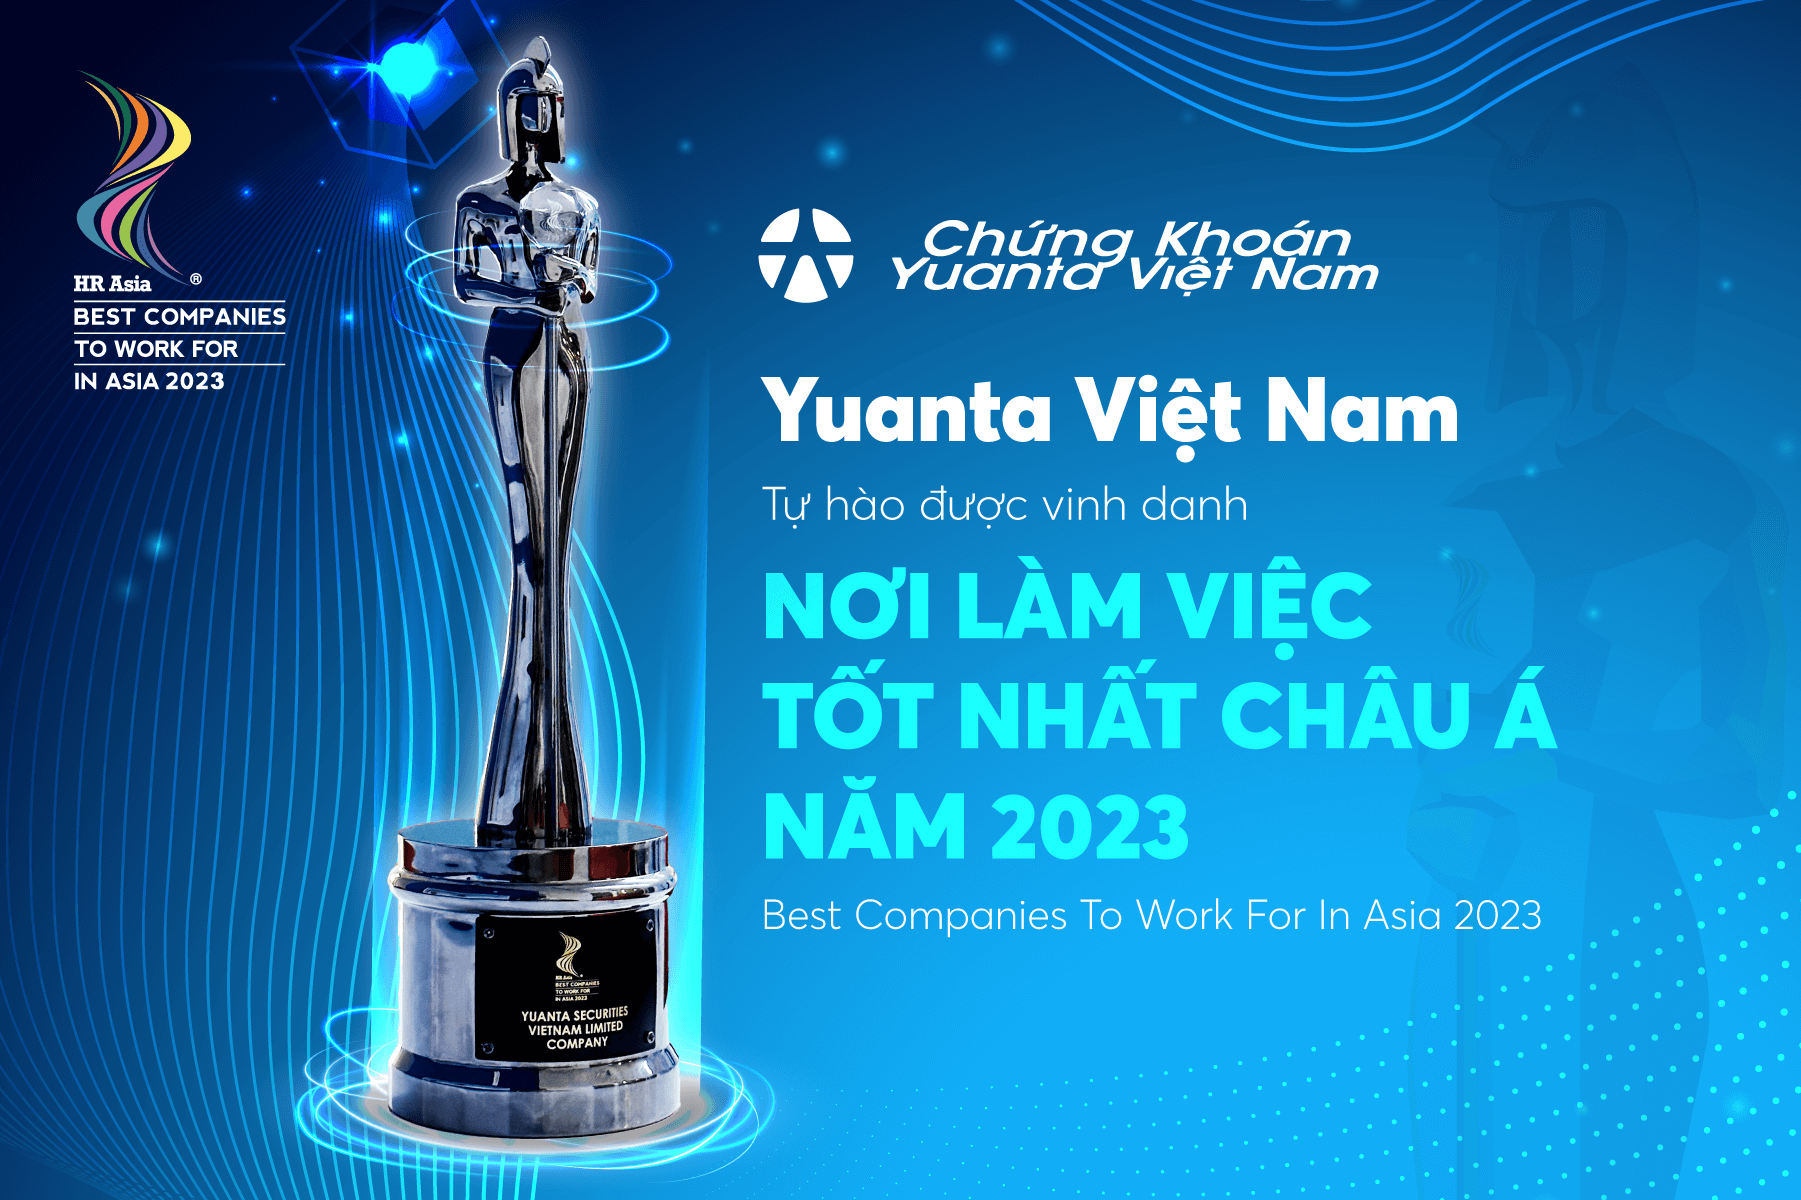 Yuanta Việt Nam vinh dự nhận giải thưởng "Nơi làm việc tốt nhất Châu Á 2023" (Best Companies to Work for in Asia 2023)